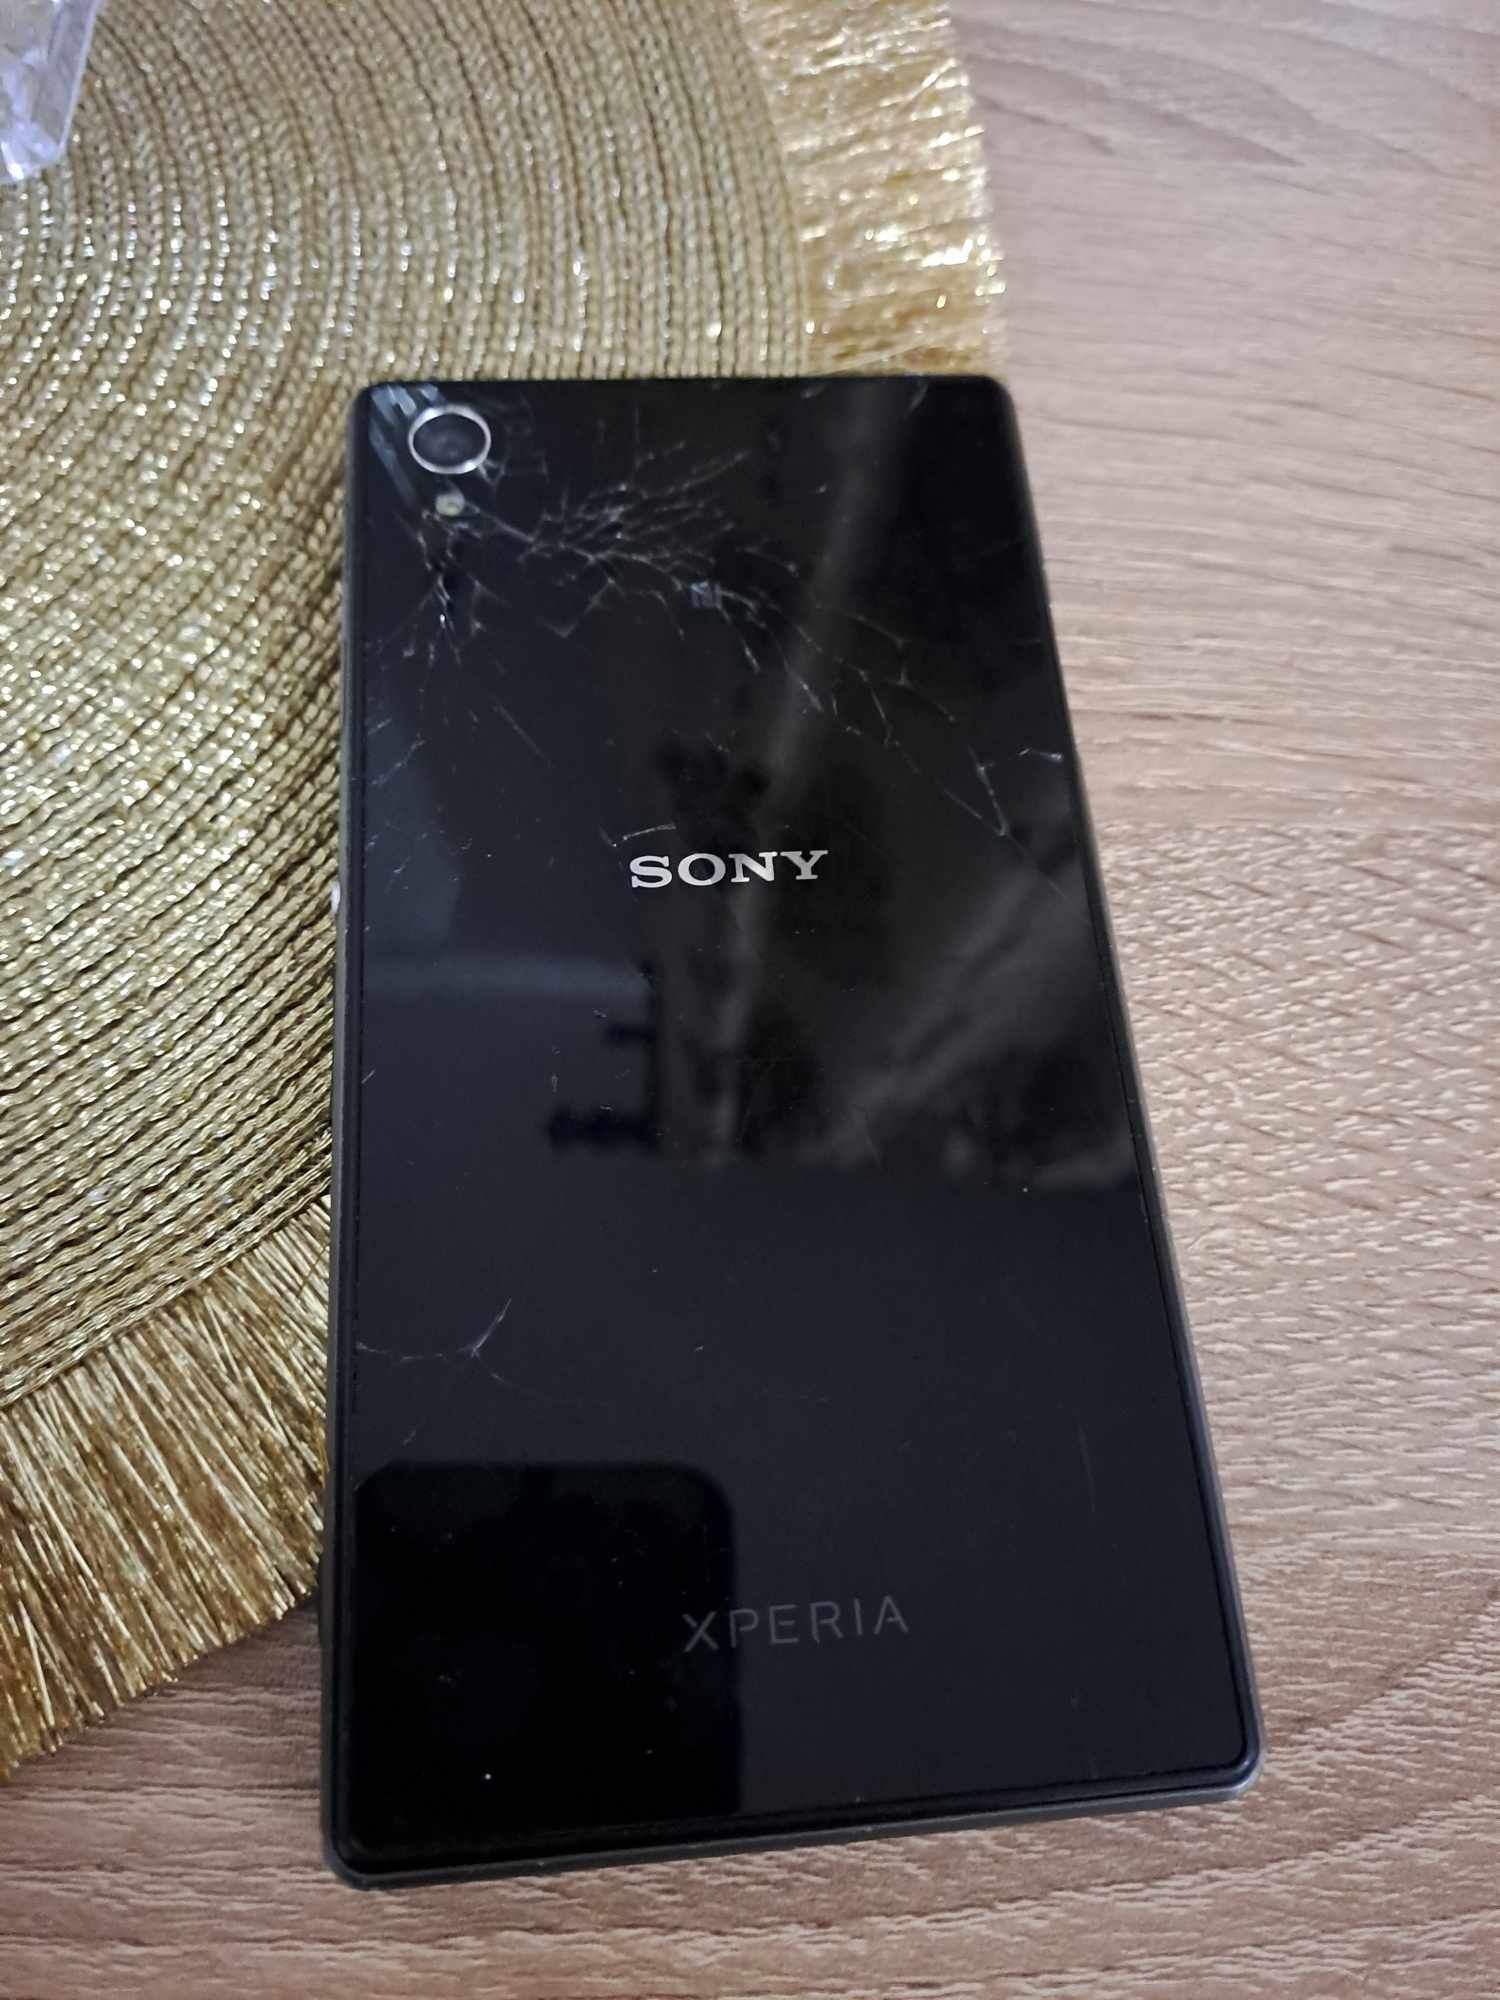 De vanzare  Sony Xperia